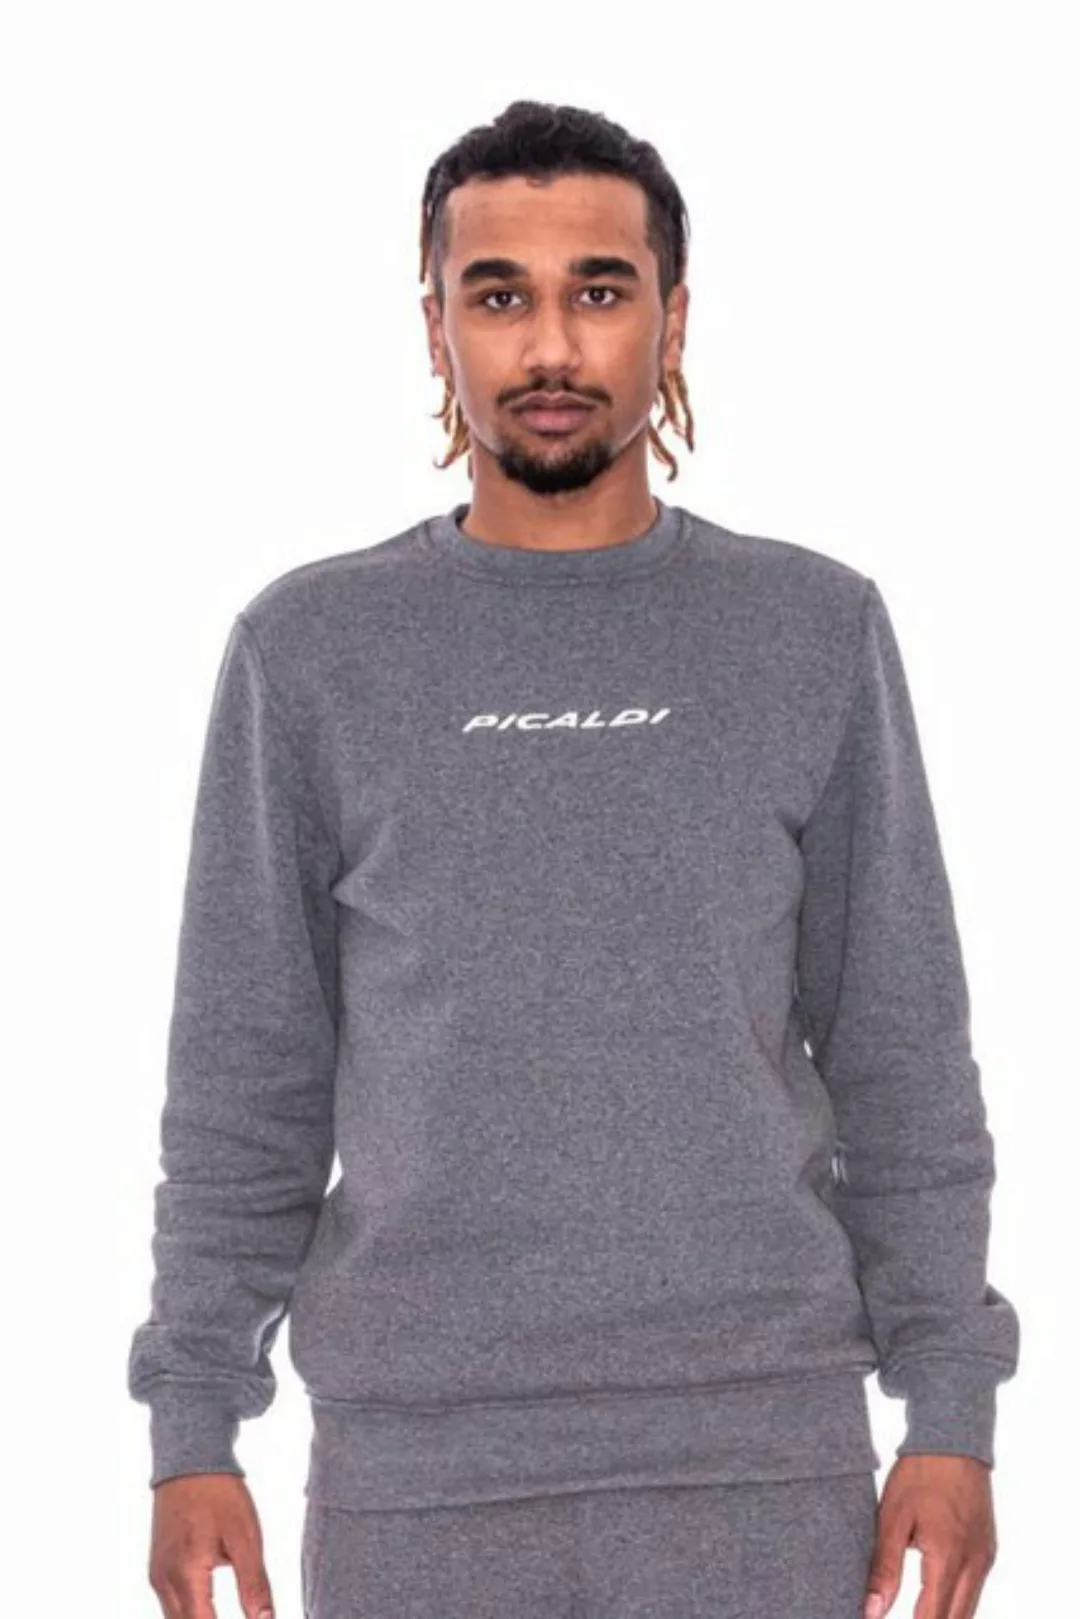 PICALDI Jeans Sweatshirt Galaxy Sweatshirt, Pullover günstig online kaufen